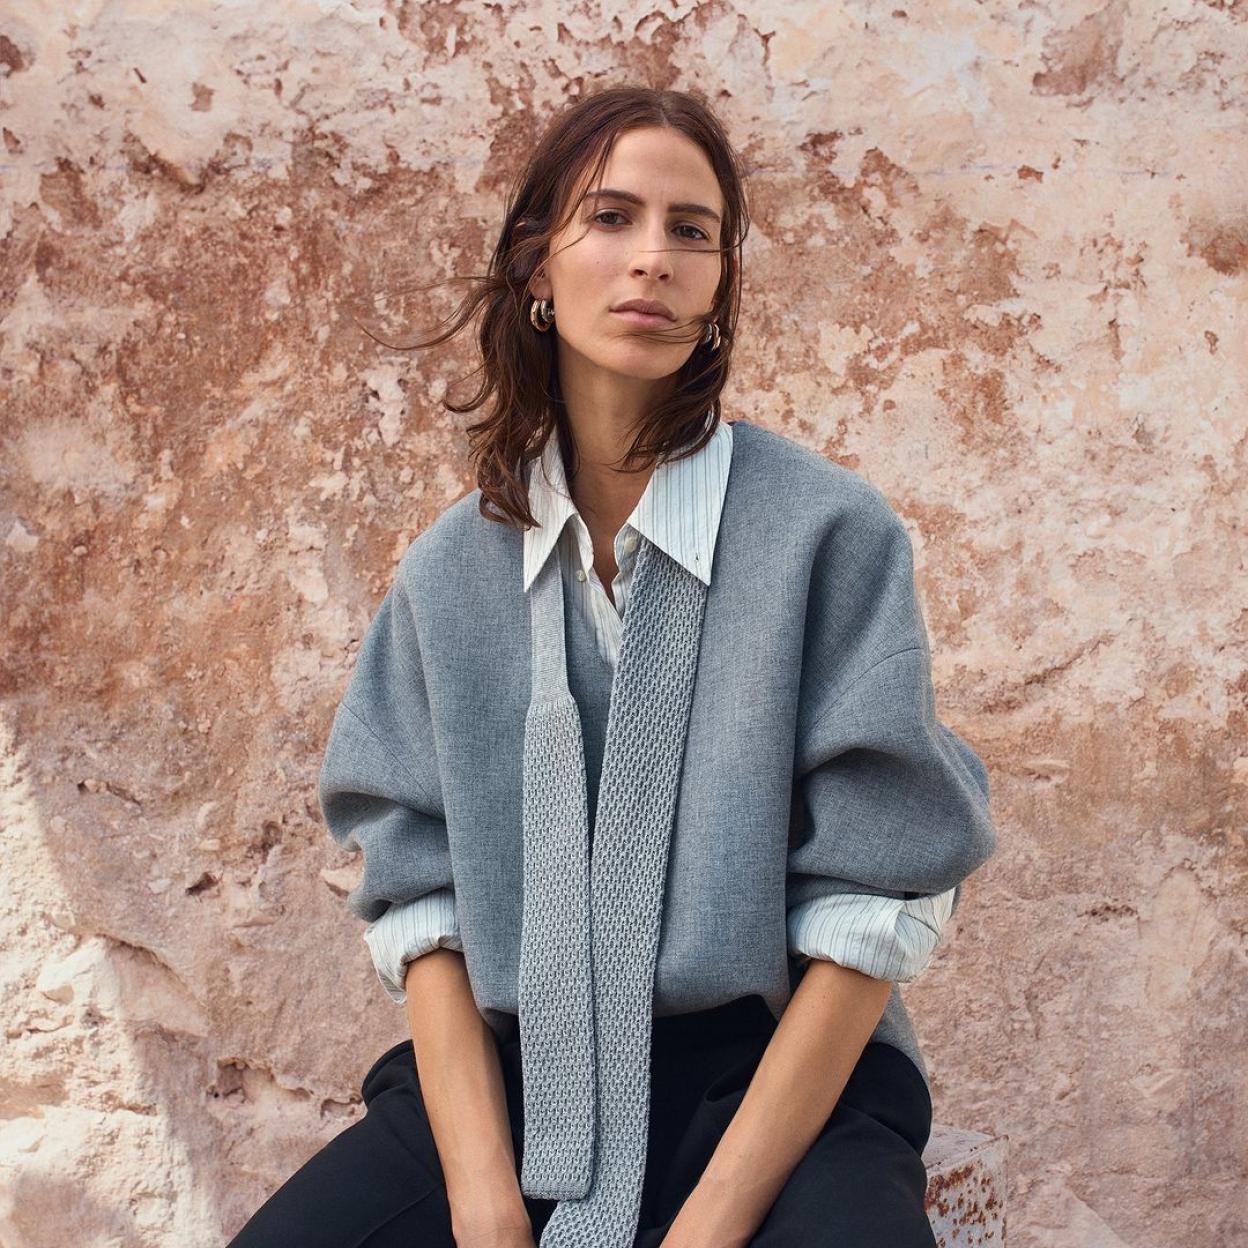 Zara Pre-Owned ya funciona: así podemos vender y comprar ropa de segunda  mano en su web